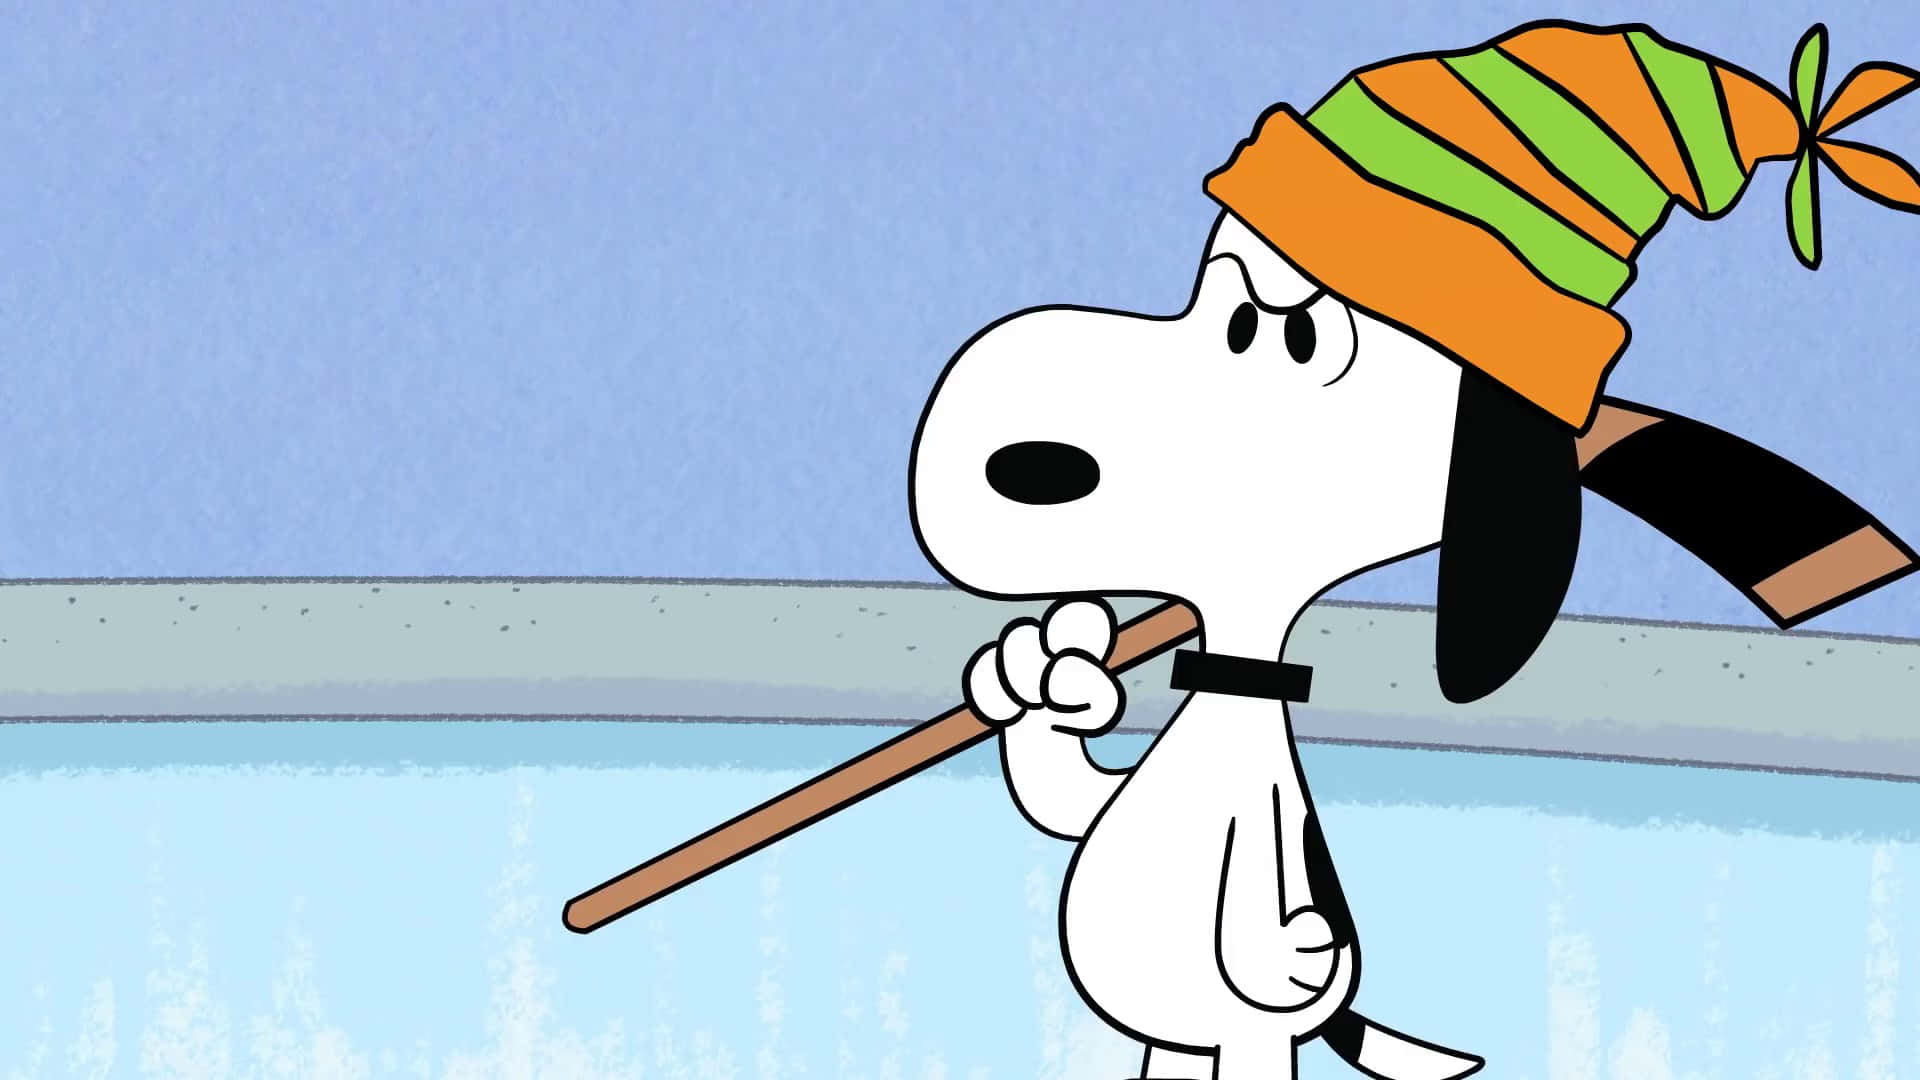 Immaginedel Personaggio Snoopy Dei Cartoni Animati